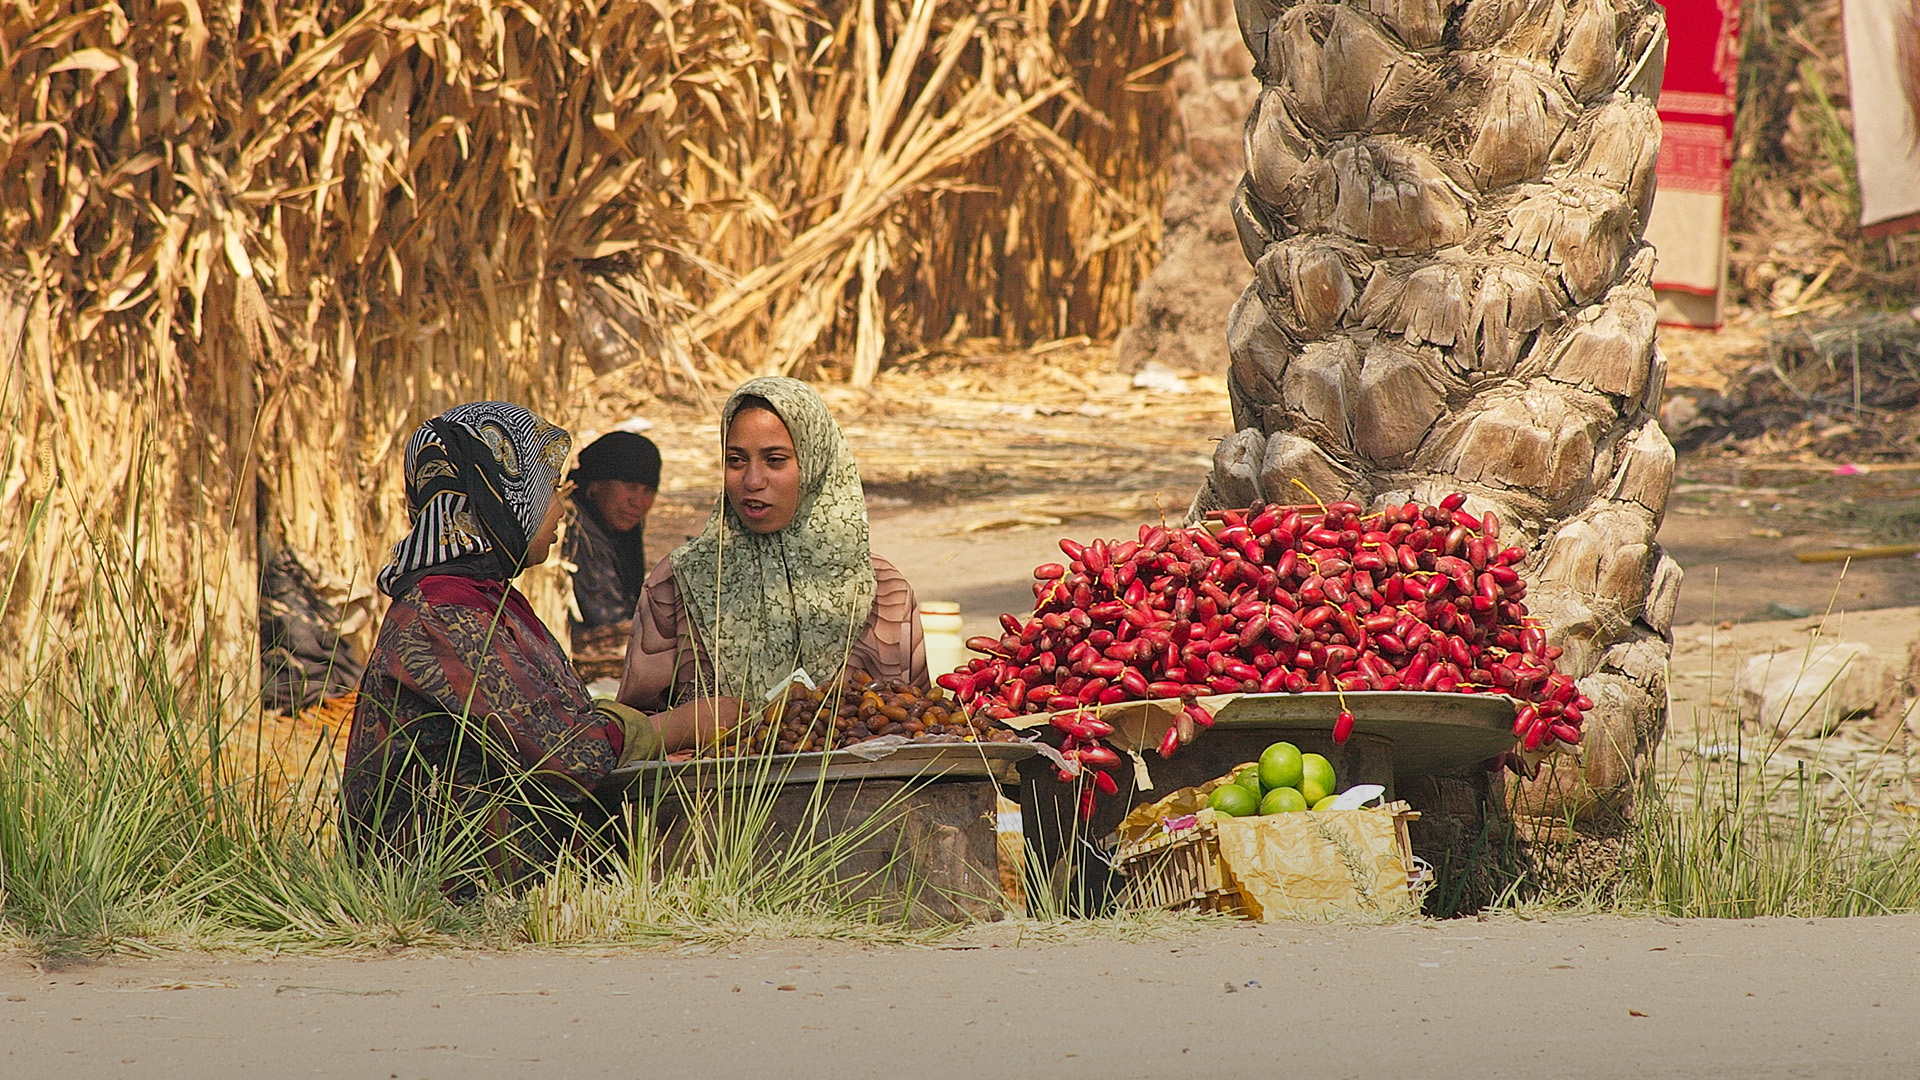 Women in an Egyptian market